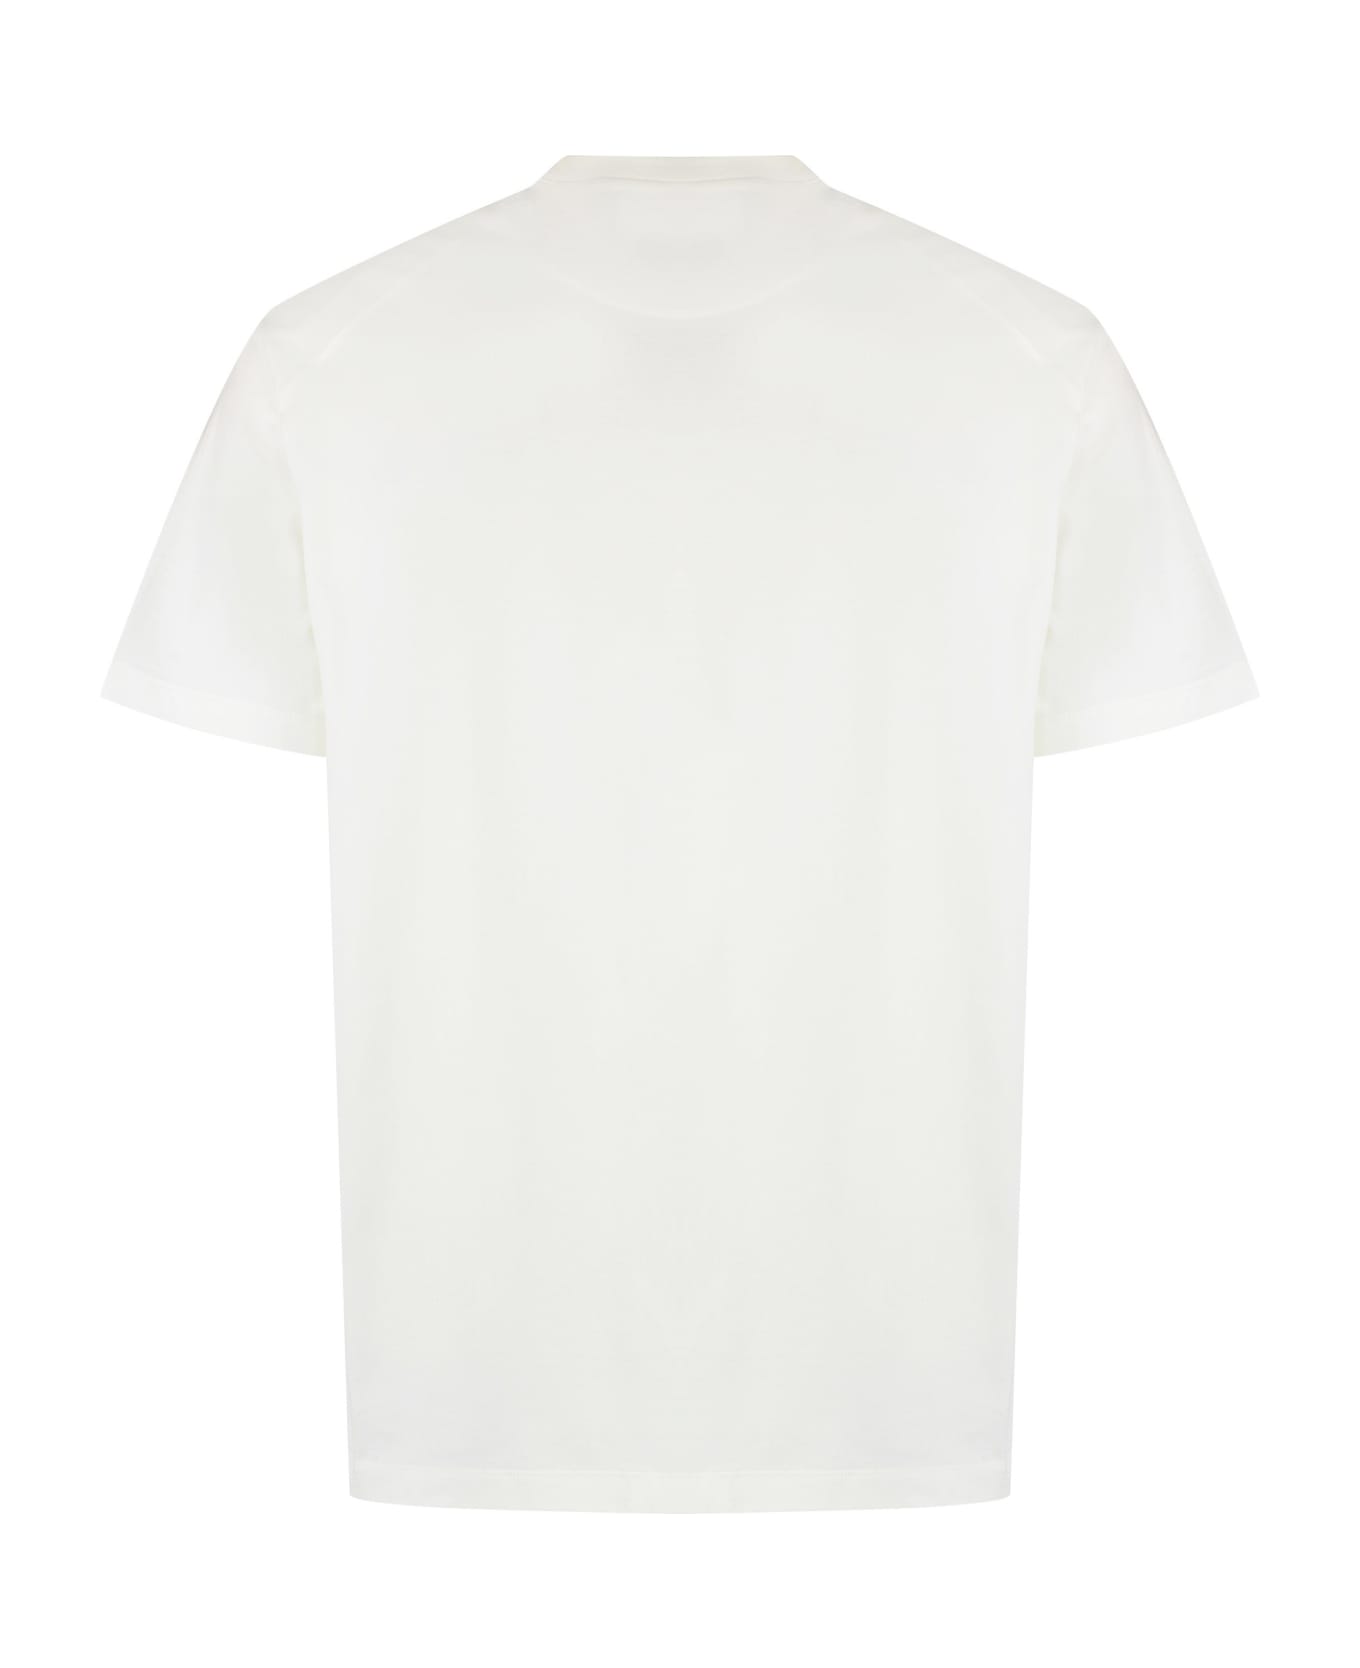 Y-3 Gfx T-shirt - Off White シャツ